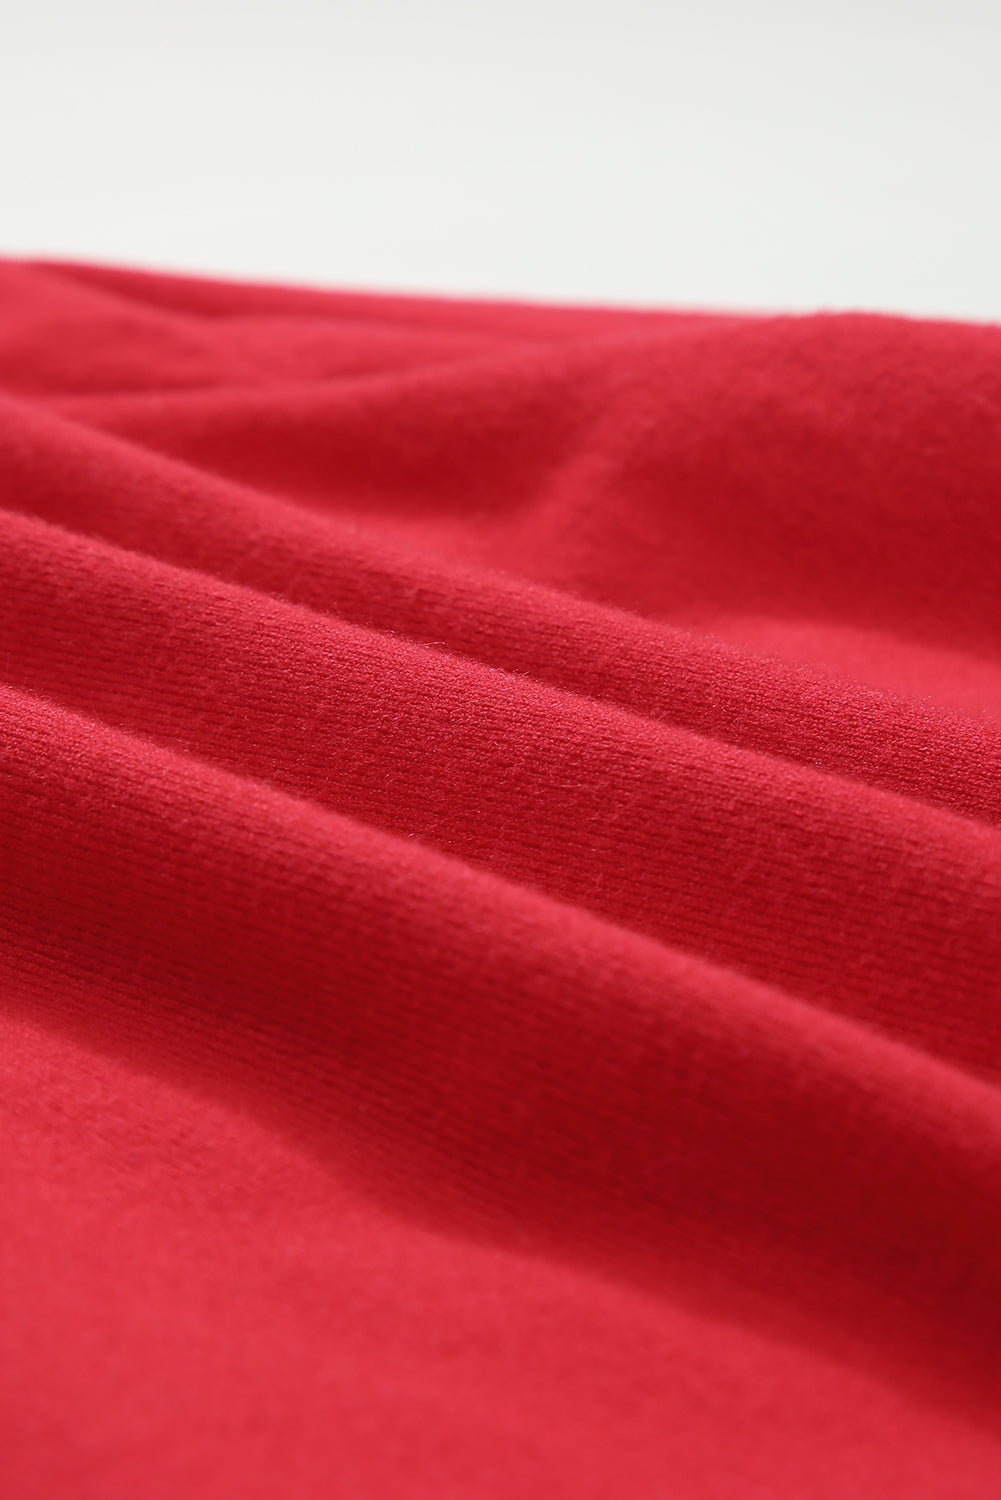 Maglione con finiture a contrasto grafico allegro e luminoso in tinsel rosso fuoco